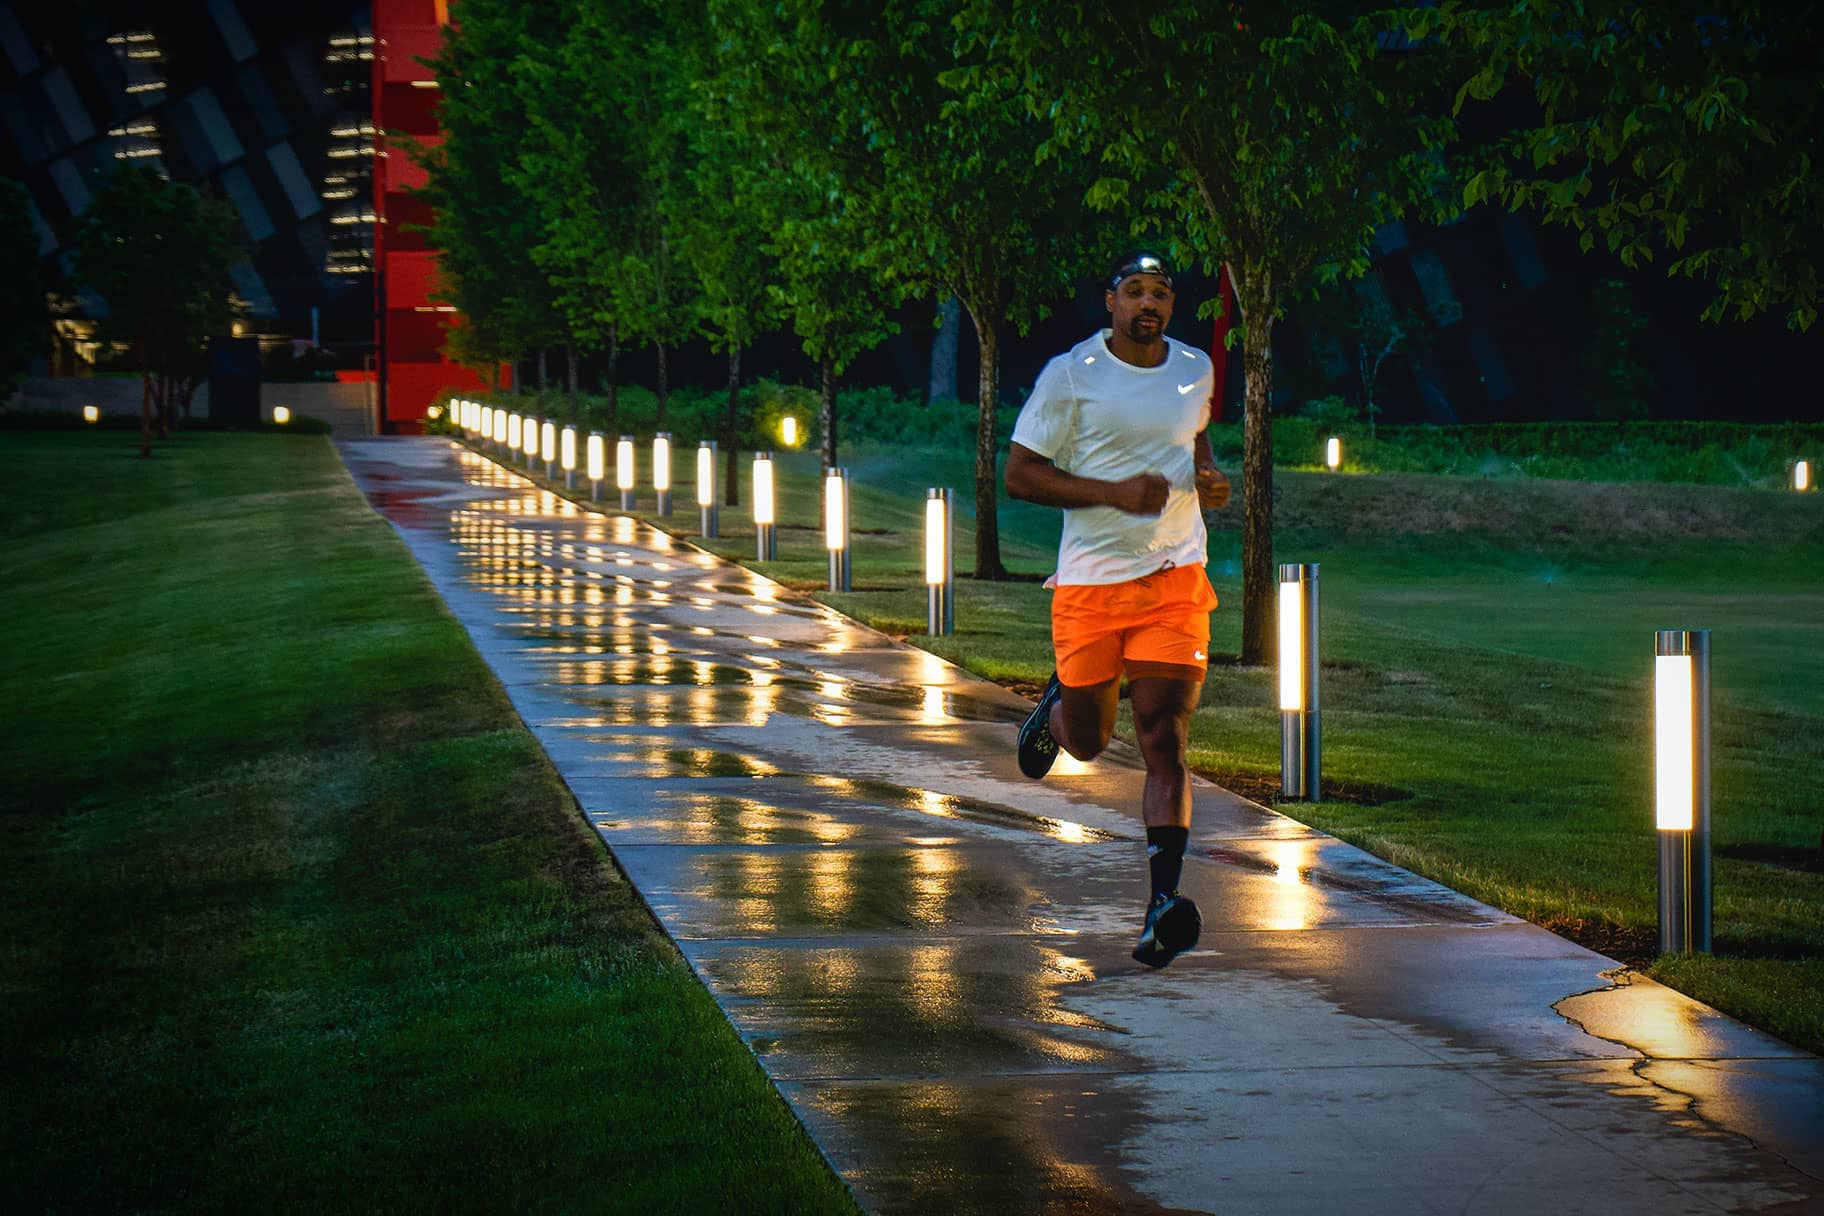 Laufen im Dunkeln - Tipps für mehr Sicherheit in der Nacht - Sport Bittl